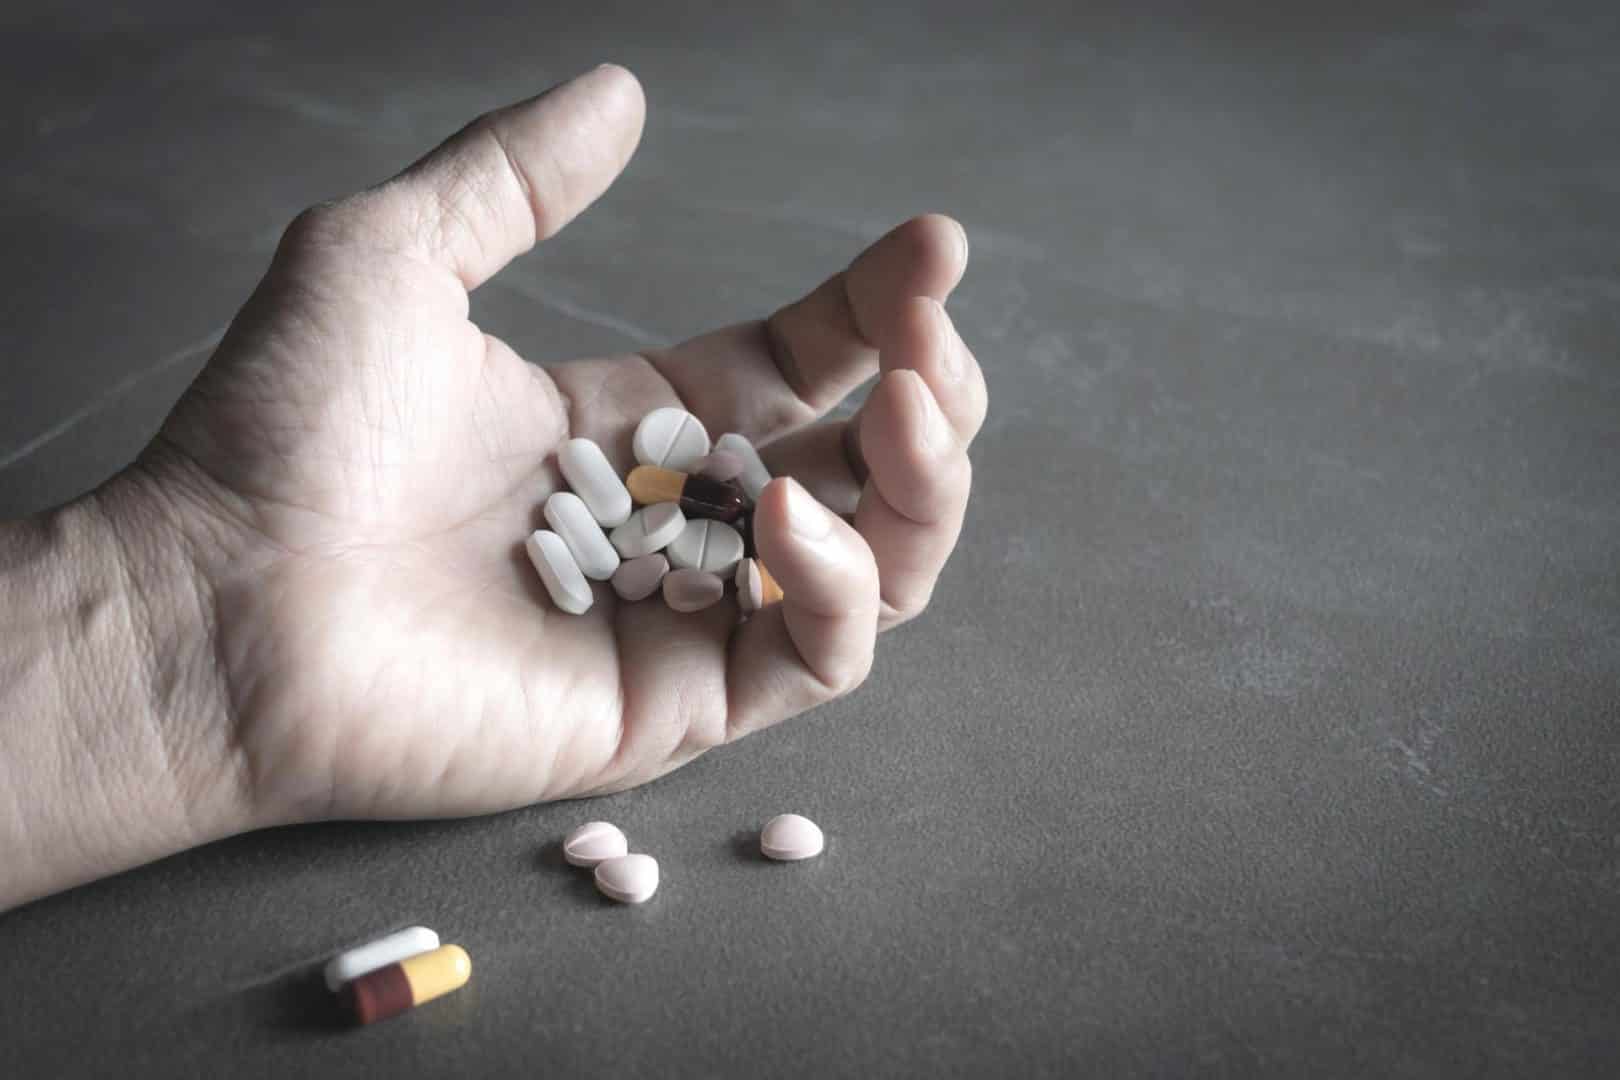 O que é a overdose? Ela mata? Como é causada? Descubra agora